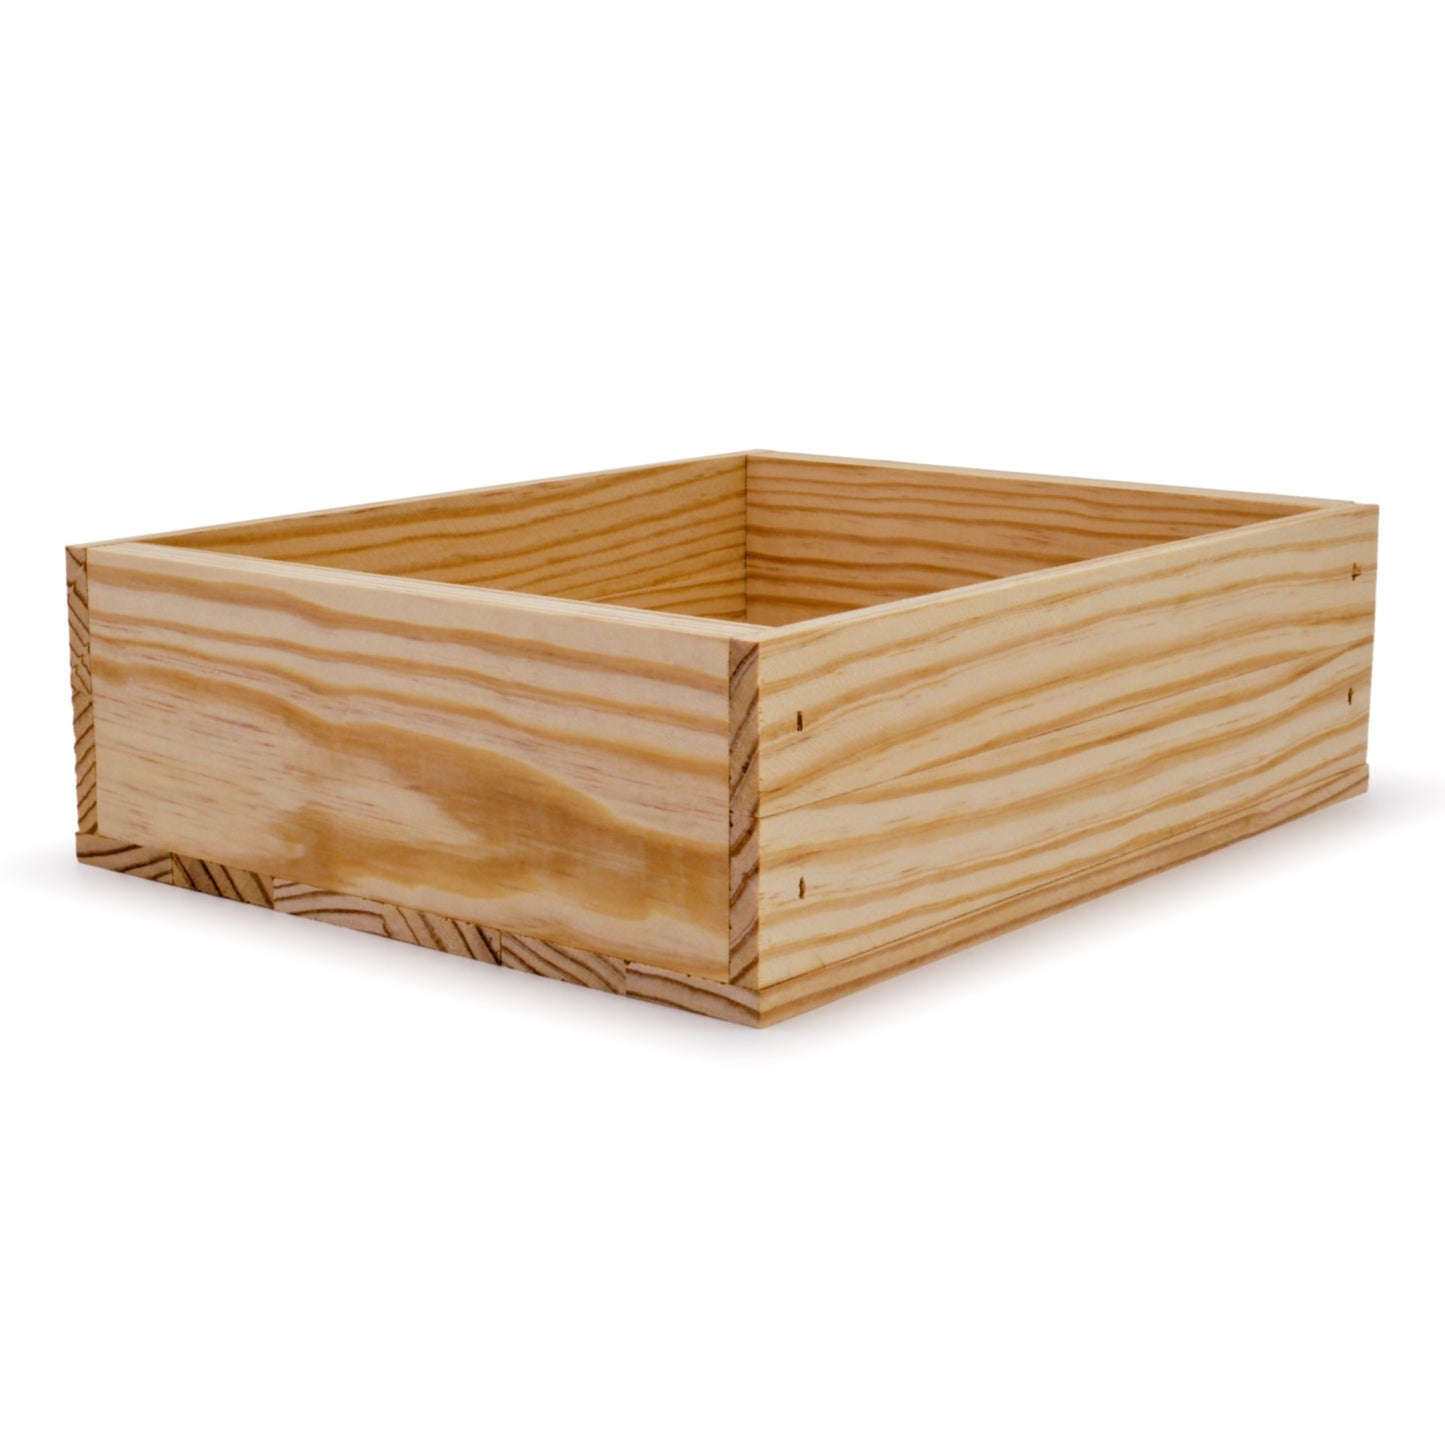 Small wooden crate 12x9.75x3.5, 6-BX-12-9.75-3.5-NX-NW-NL, 12-BX-12-9.75-3.5-NX-NW-NL, 24-BX-12-9.75-3.5-NX-NW-NL, 48-BX-12-9.75-3.5-NX-NW-NL, 96-BX-12-9.75-3.5-NX-NW-NL